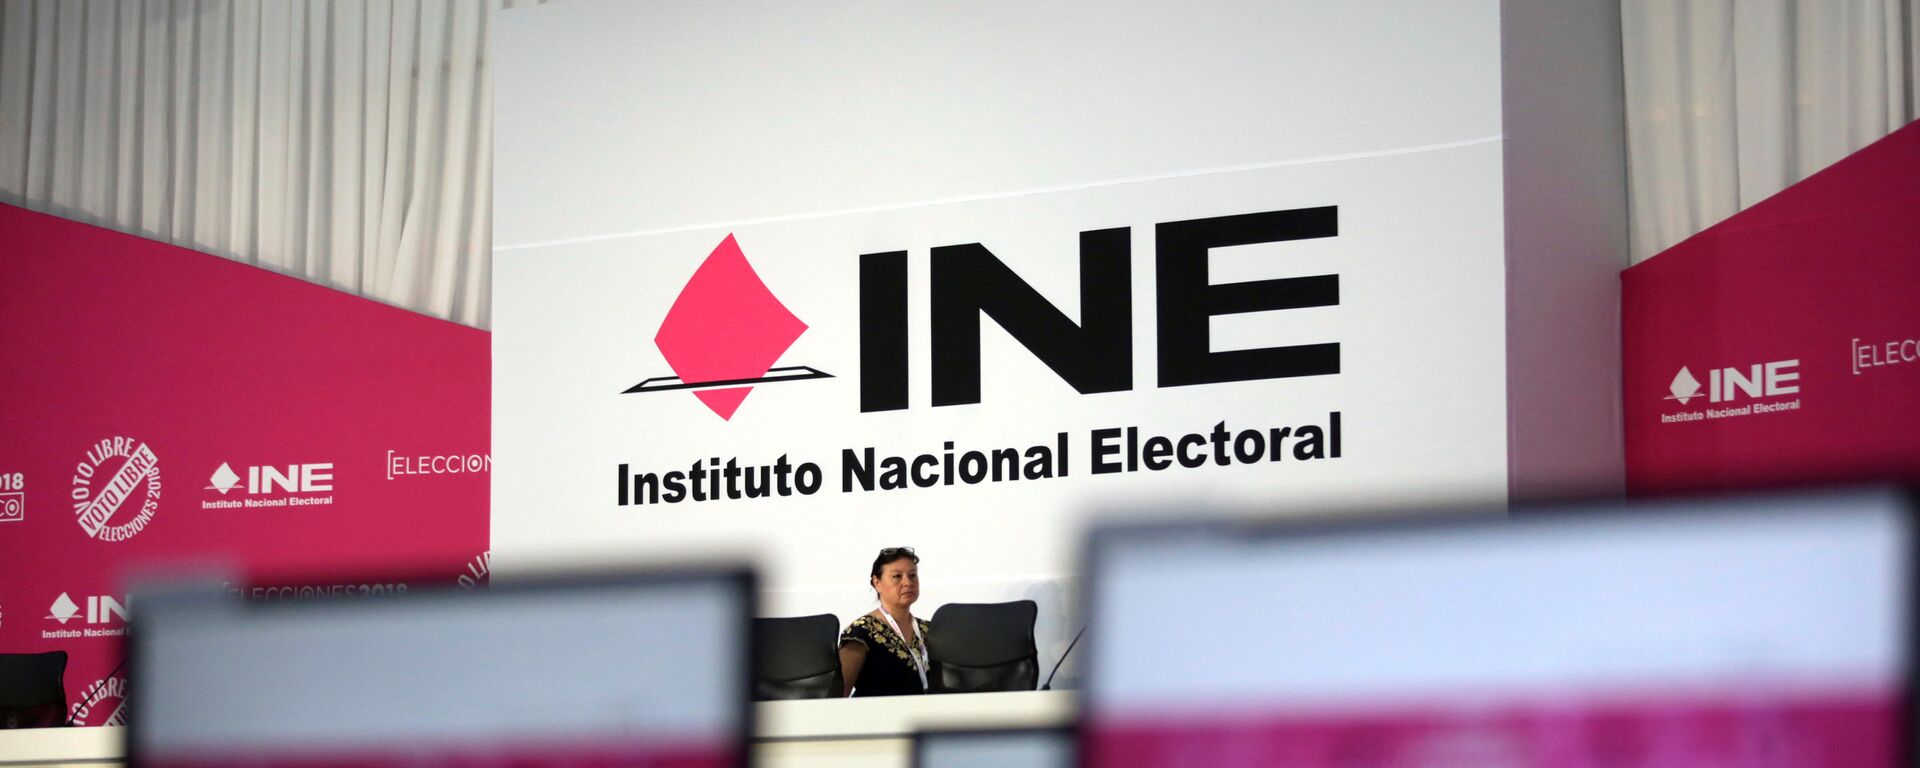 El interior de la sede del INE momentos antes del inicio de las elecciones de México el 1 de julio - Sputnik Mundo, 1920, 11.05.2022